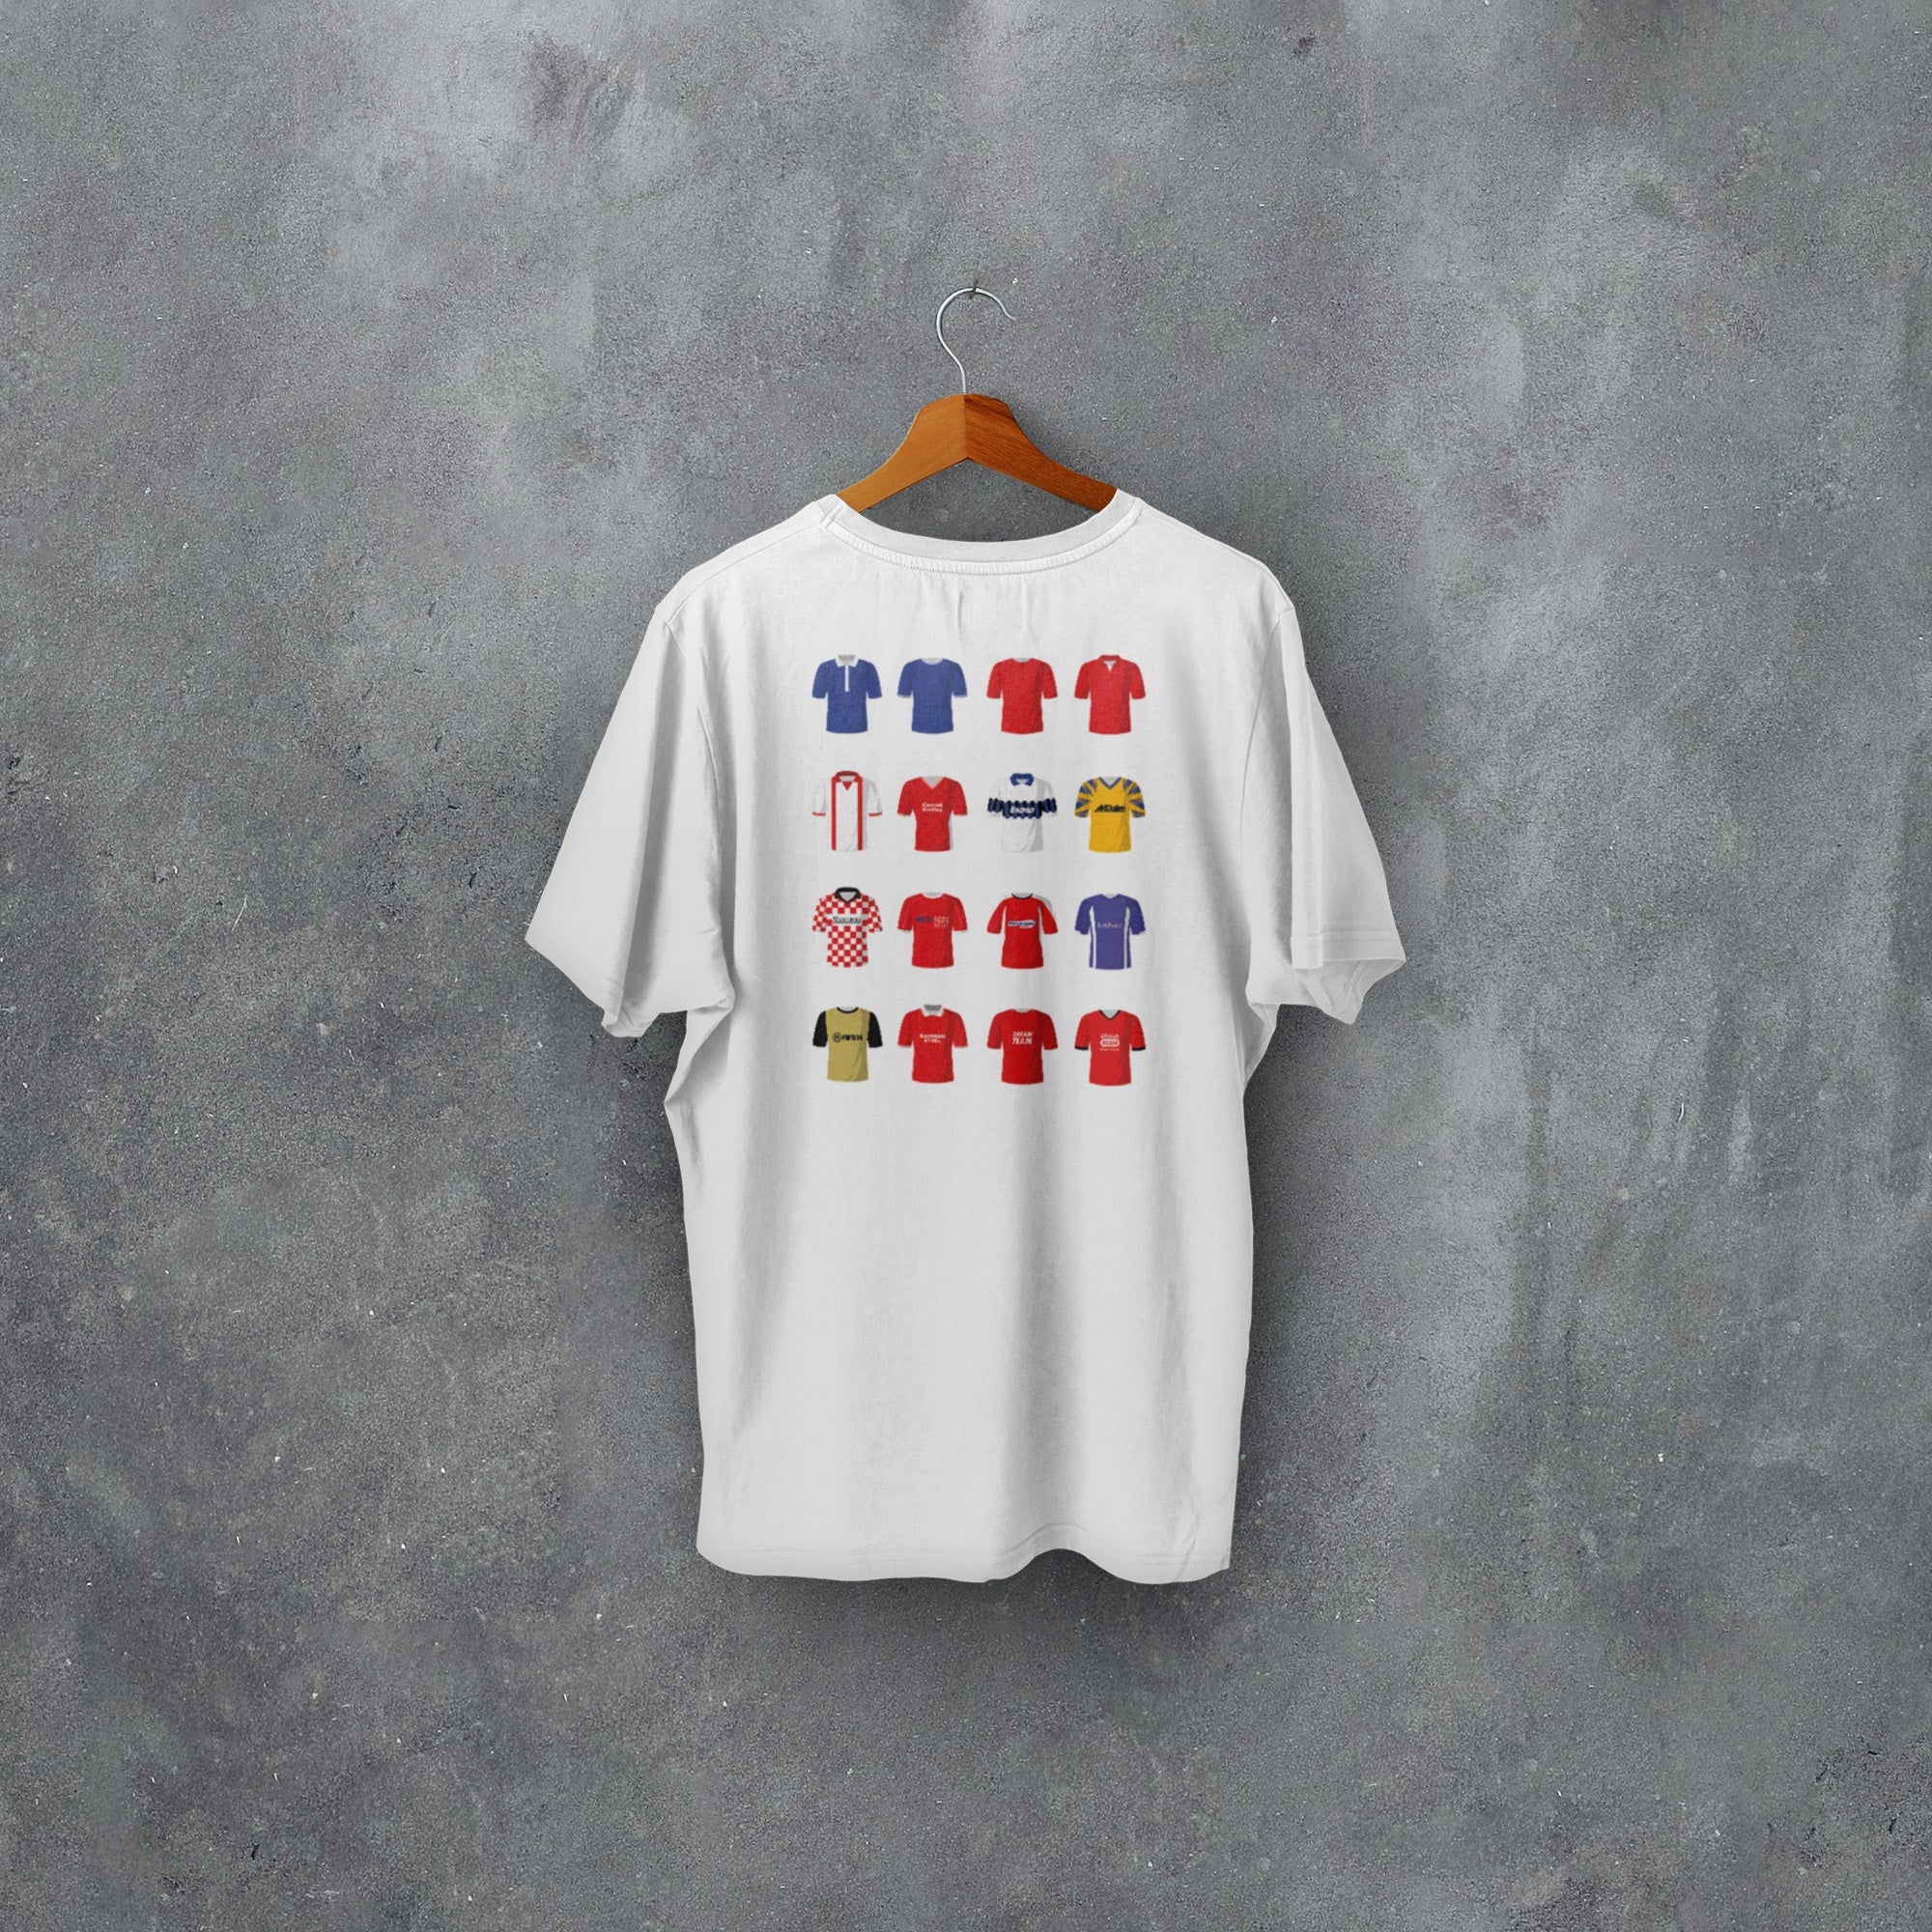 Orient Classic Kits Football T-Shirt